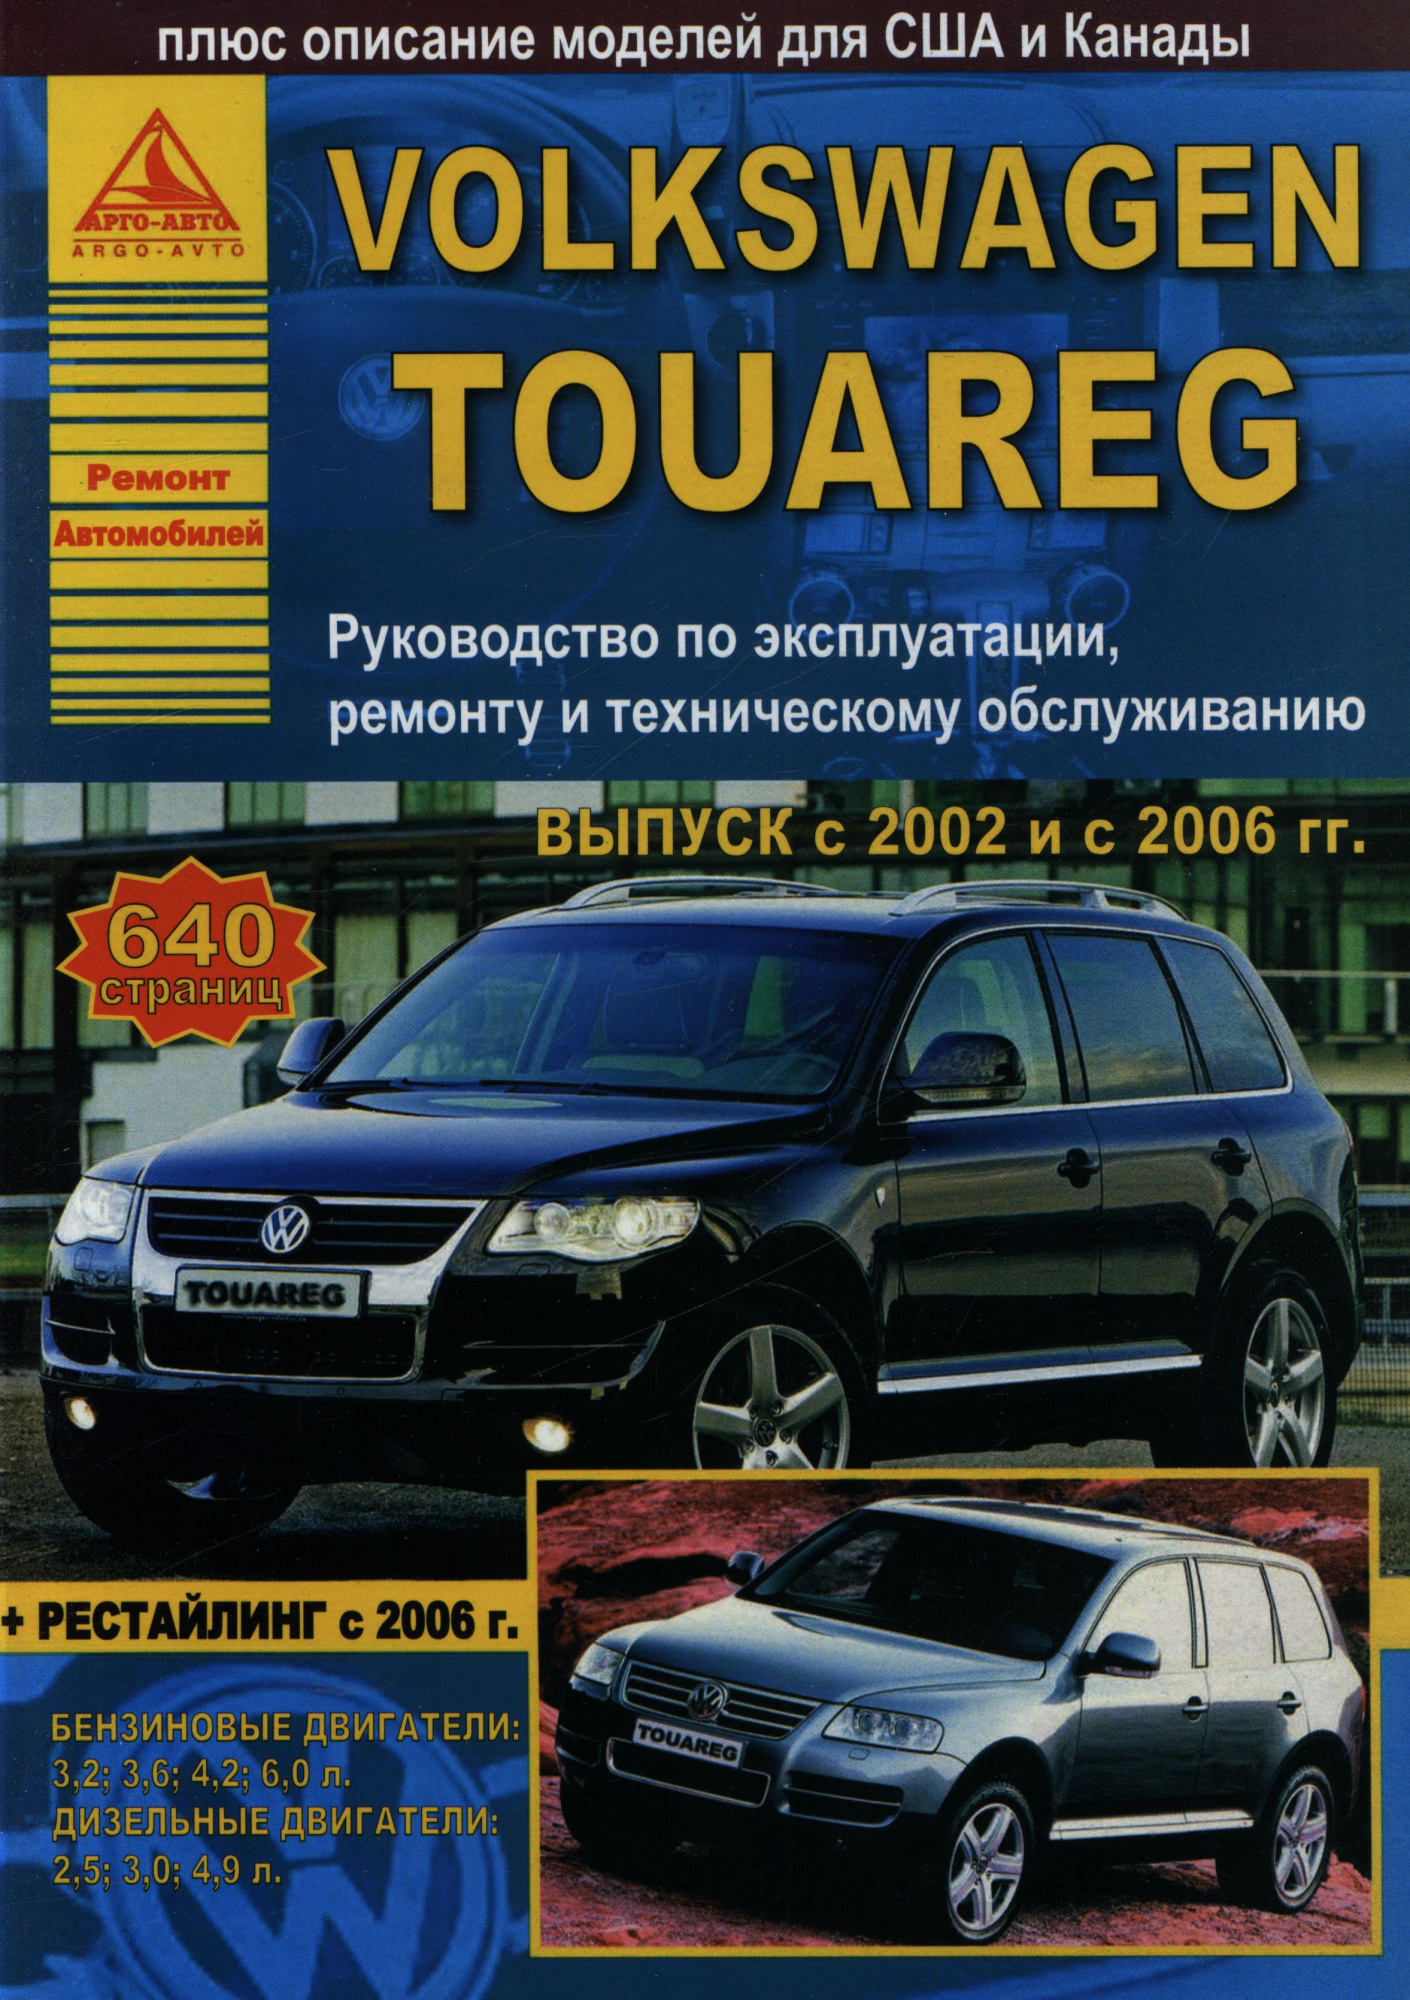 Volkswagen Touareg 2002-2010 рестайлинг с 2006. Книга, руководство по ремонту и эксплуатации. Атласы Автомобилей